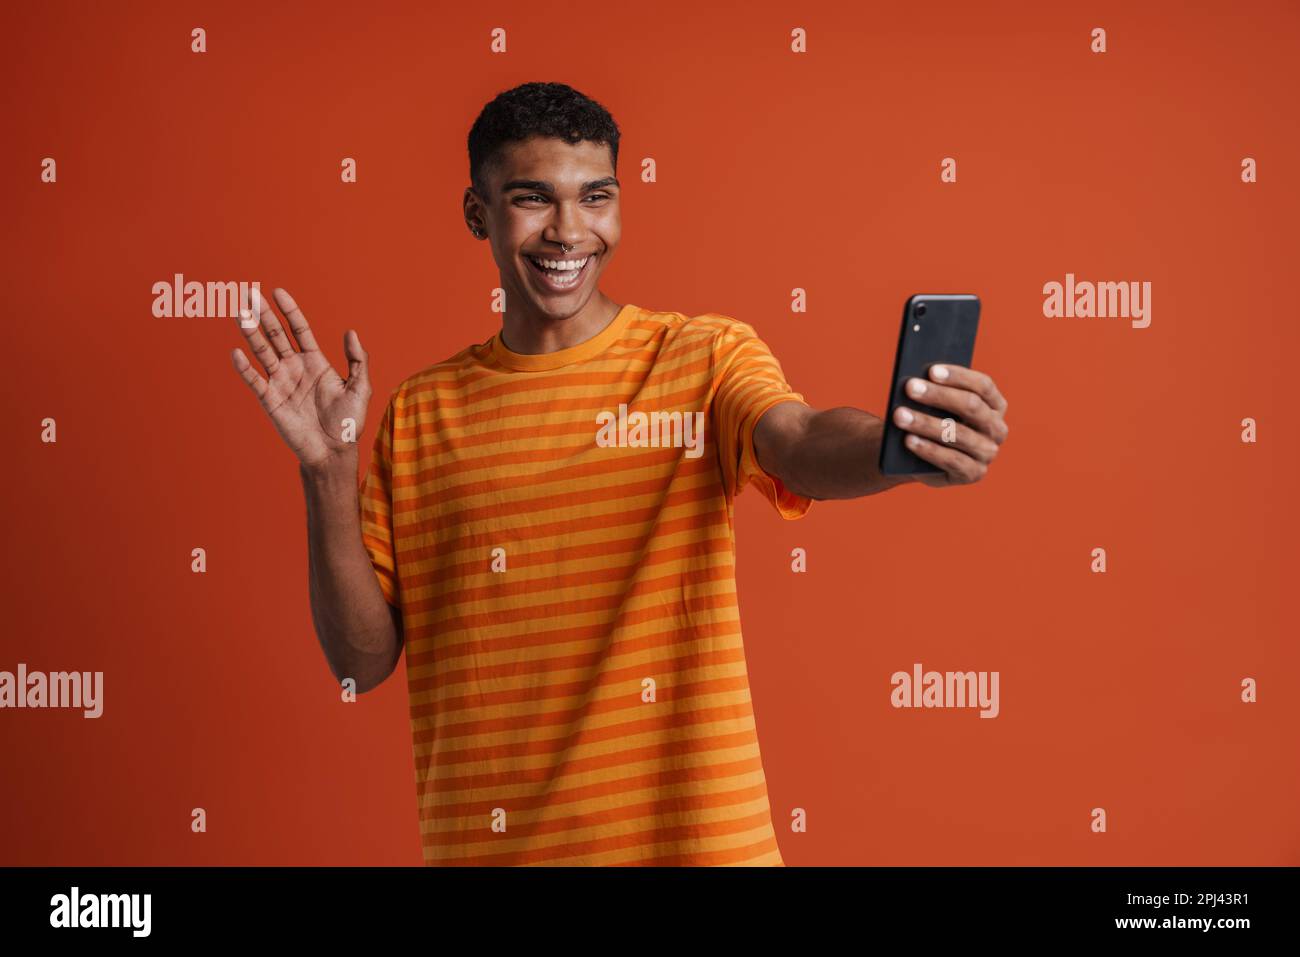 Ein junger, gut aussehender, glücklicher afrikaner, der pierdelnd winkt und Selfie am Telefon macht, während er über einem isolierten orangefarbenen Hintergrund steht Stockfoto